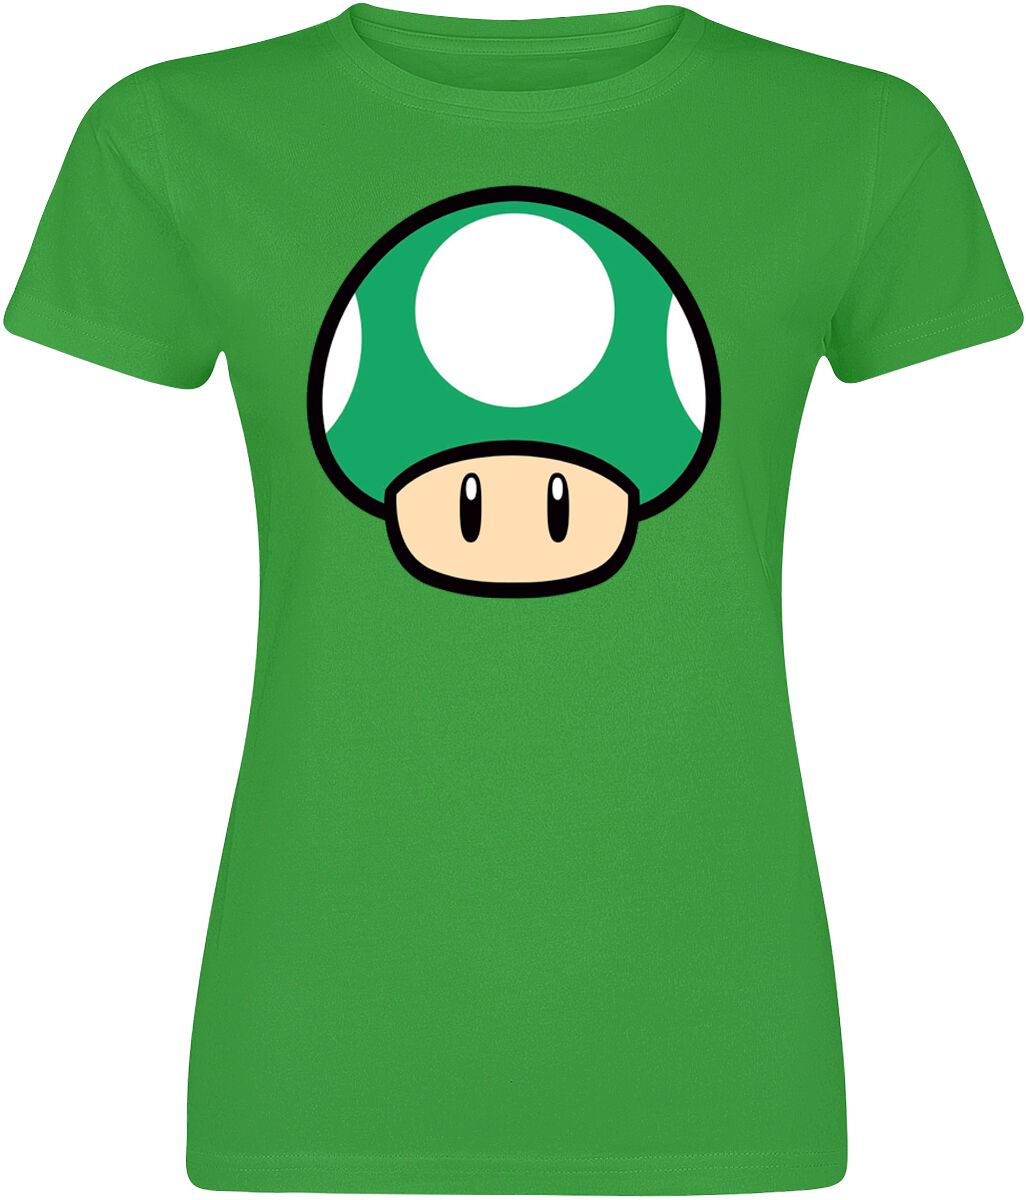 T-Shirt Manches courtes Gaming de Super Mario - Champignon - S à XXL - pour Femme - vert